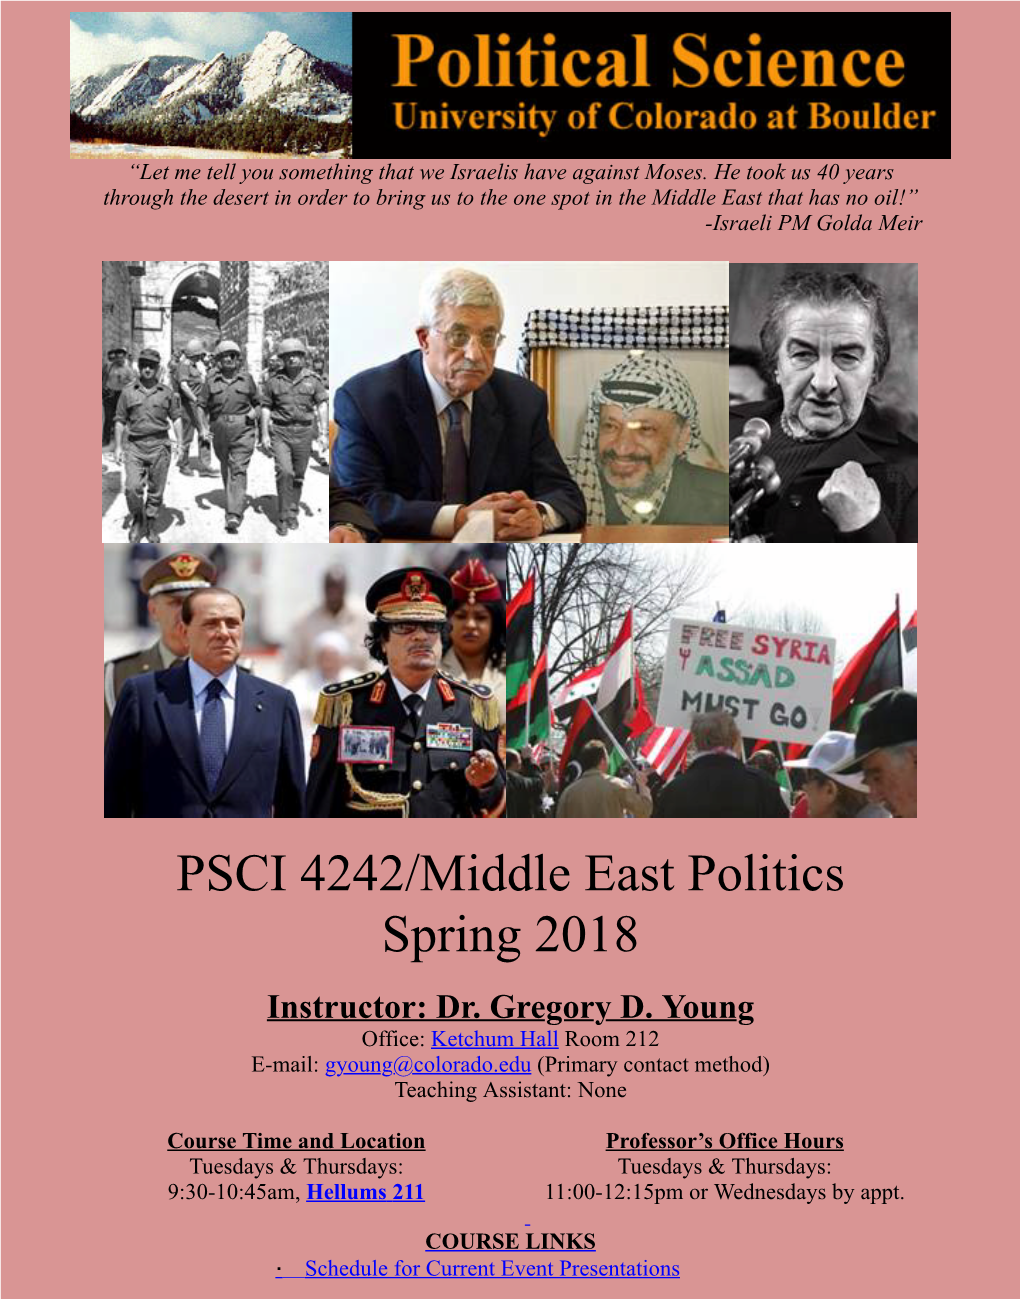 PSCI 4242/Middle East Politics Spring 2018